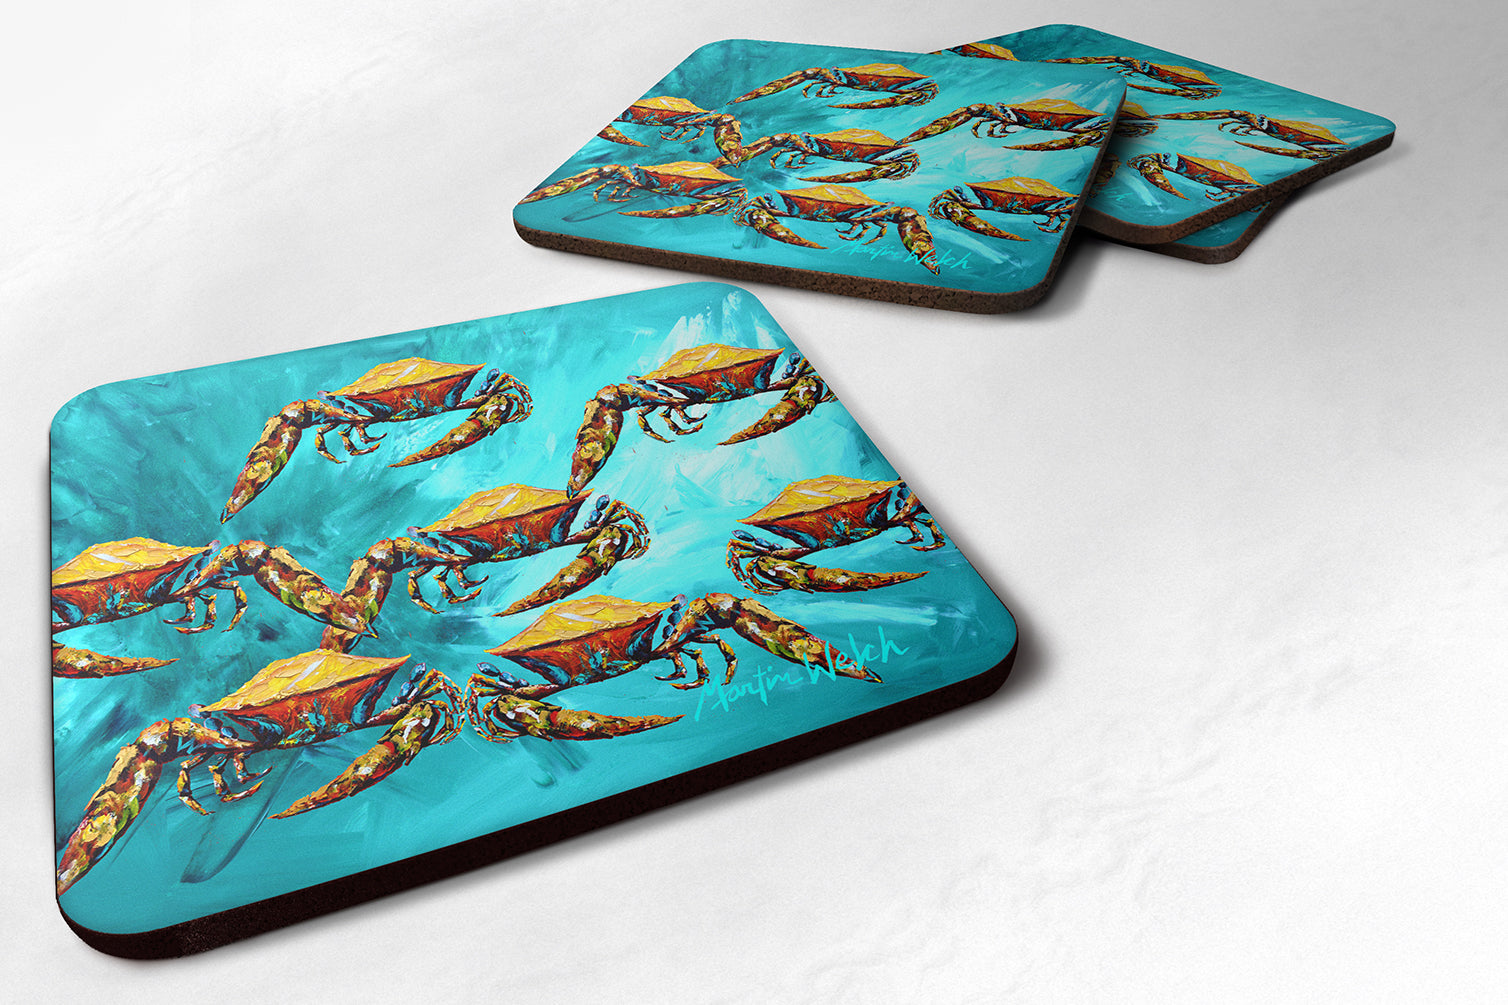 Buy this Crab Lotta Crabs Foam Coaster Set of 4